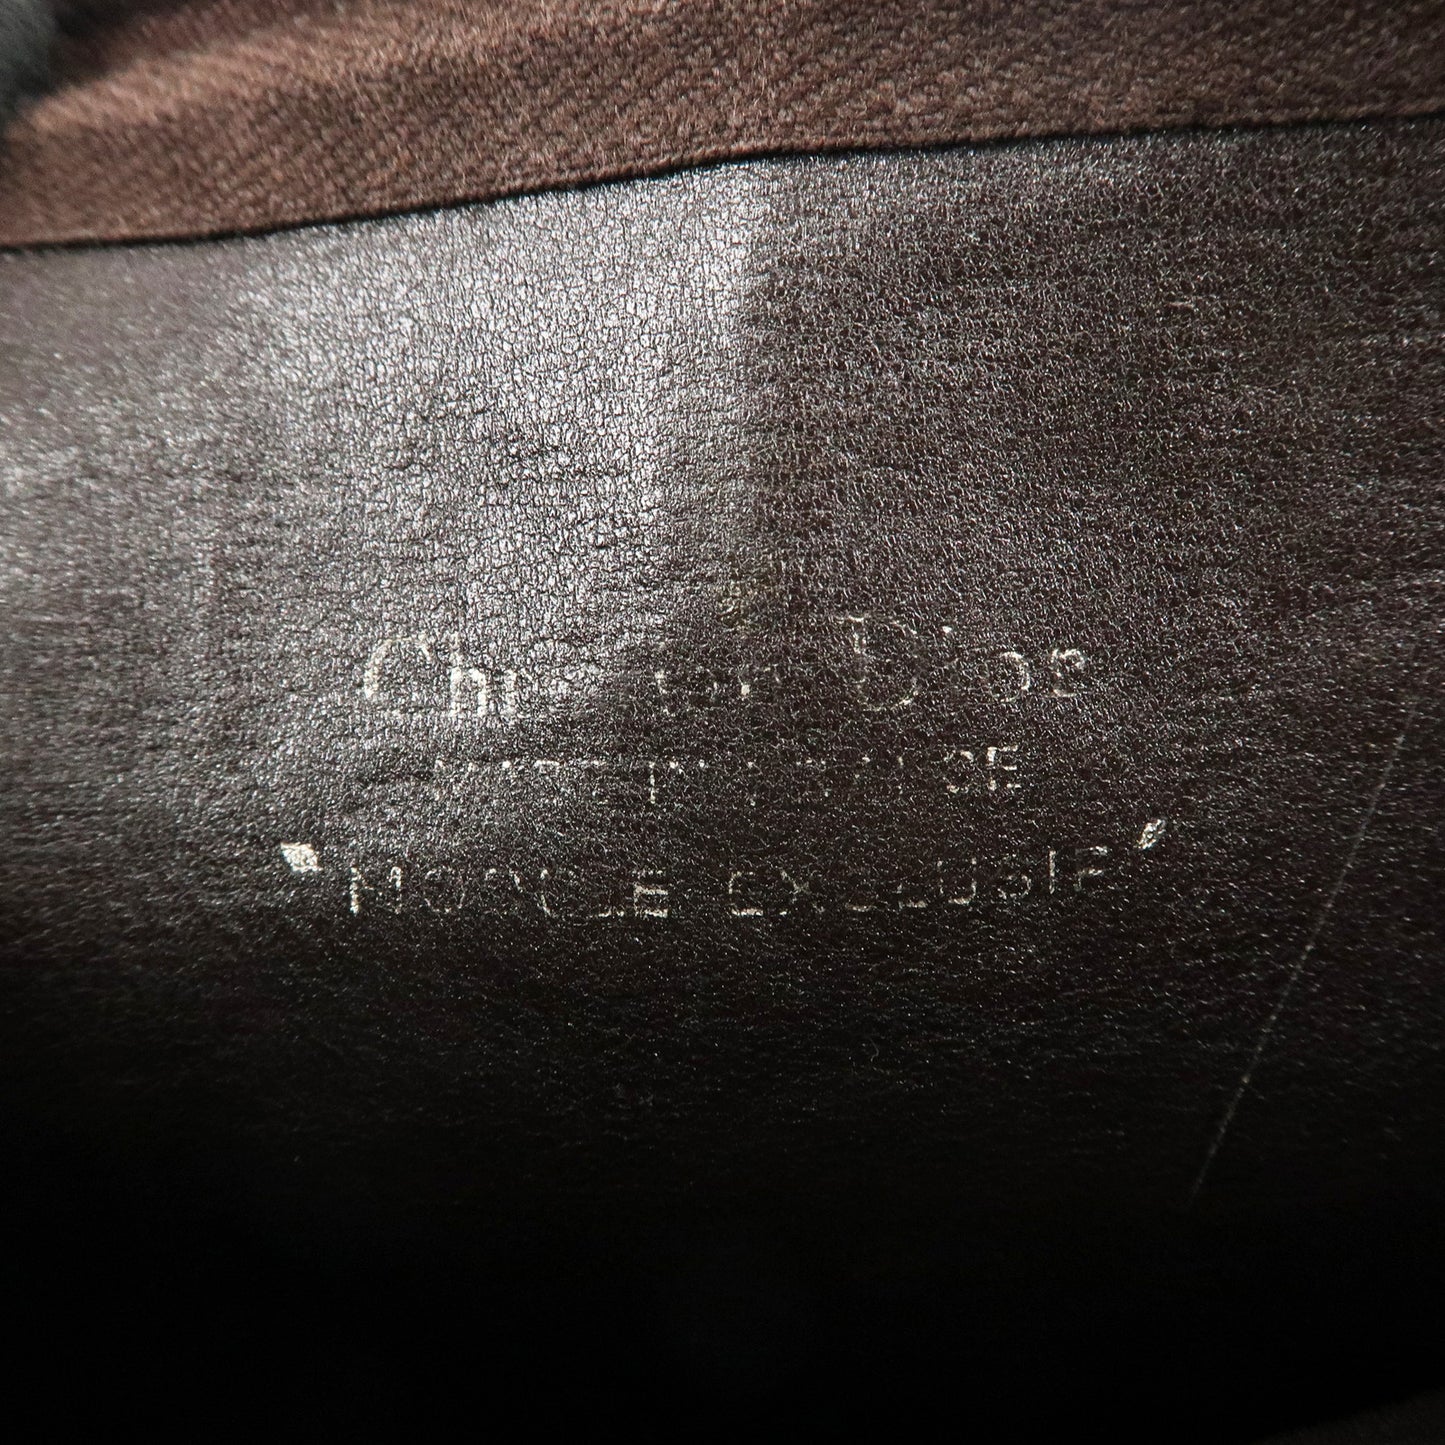 Christian Dior Trotter Canvas Leather Shoulder Bag Beige Brown